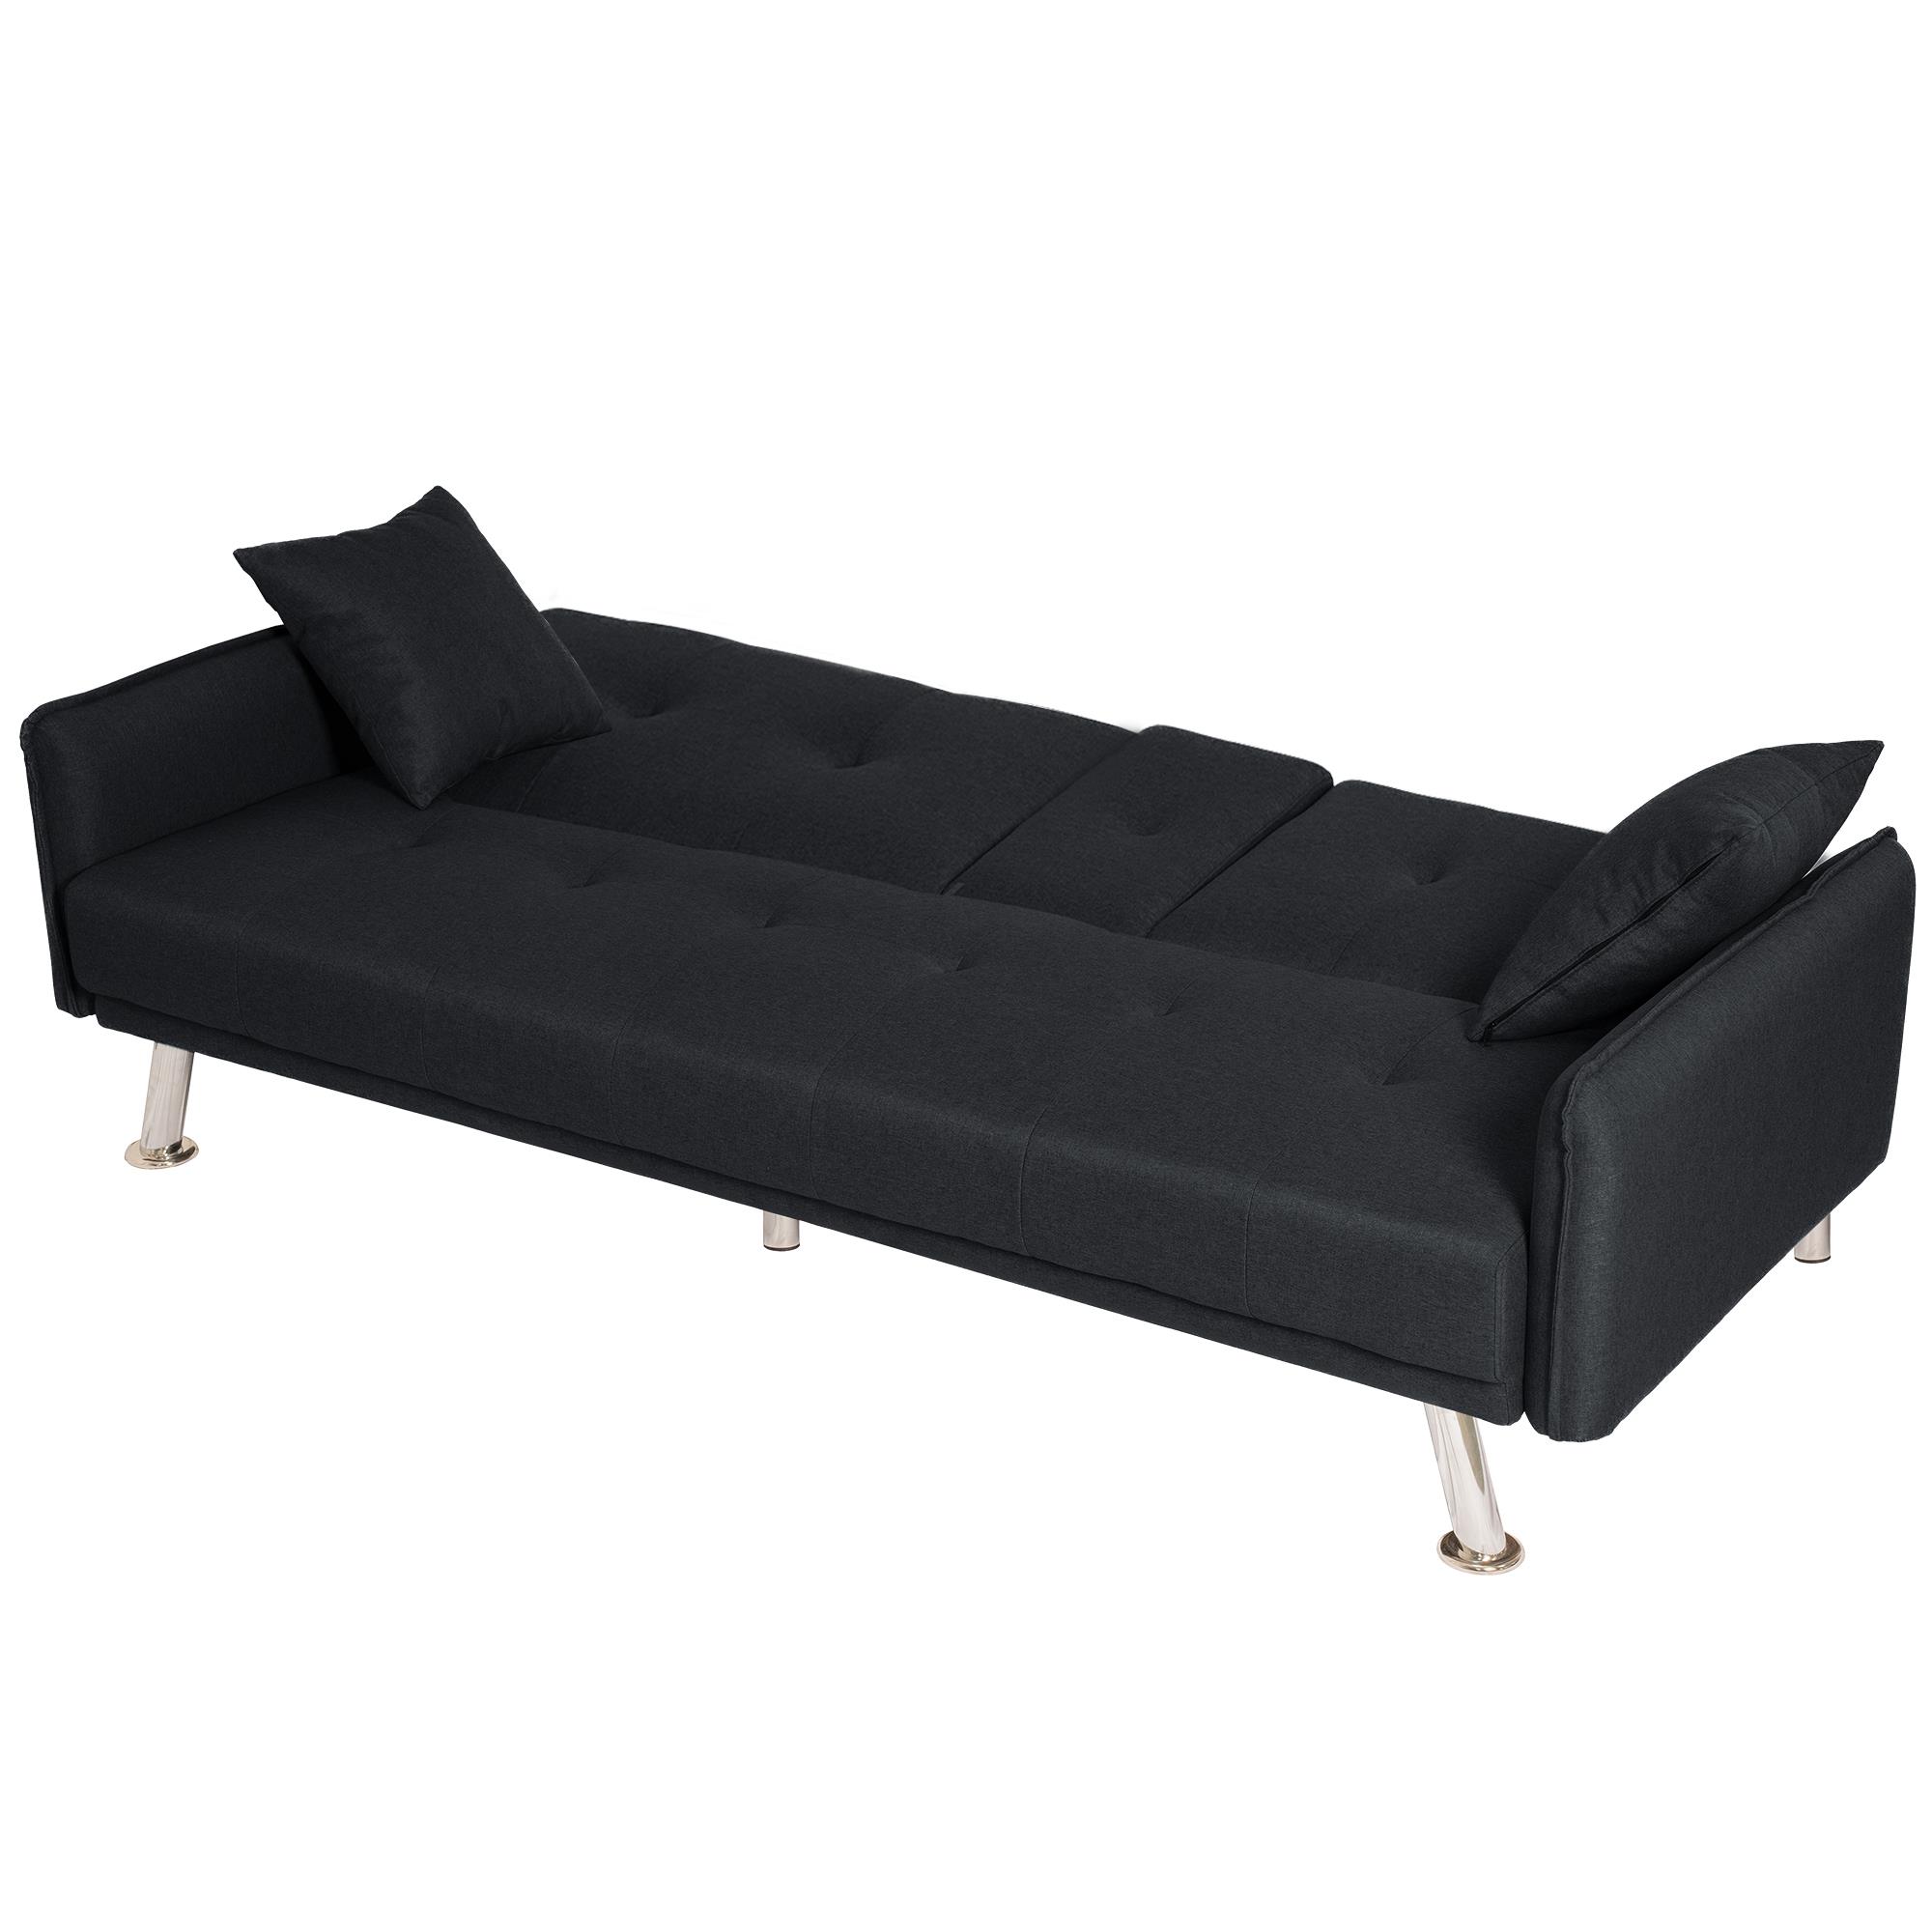 ספה תלת מושבית נפתחת למיטה תלת מושבית דגם פריז צבע שחור